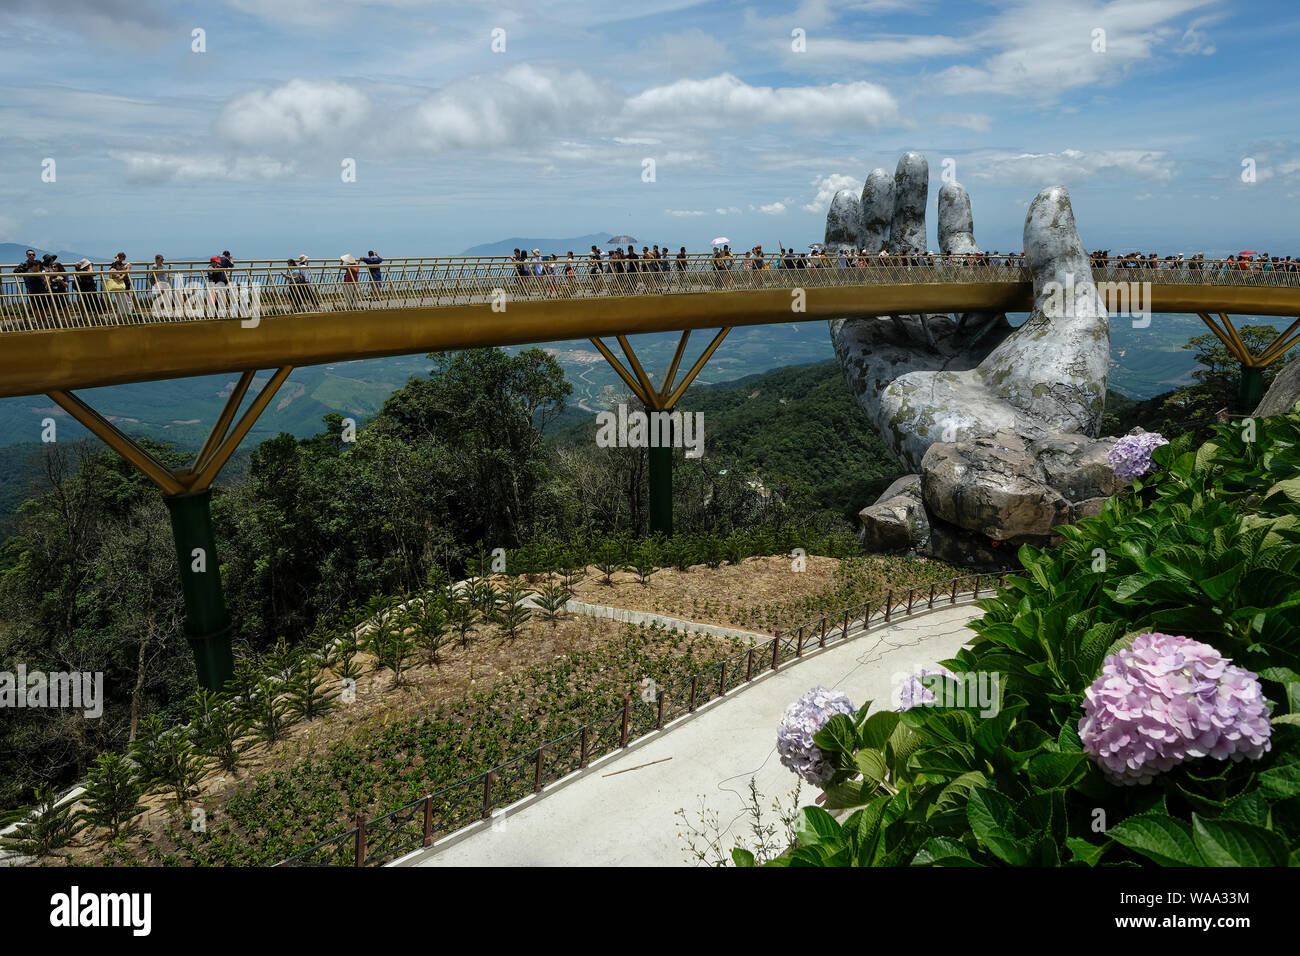 Da nang, Vietnam - Août 18, 2018 : les touristes dans le Golden Bridge. La Golden Bridge est un pont piétonnier de 150 m de long dans les Ba Na Hills à Da Nang. Banque D'Images